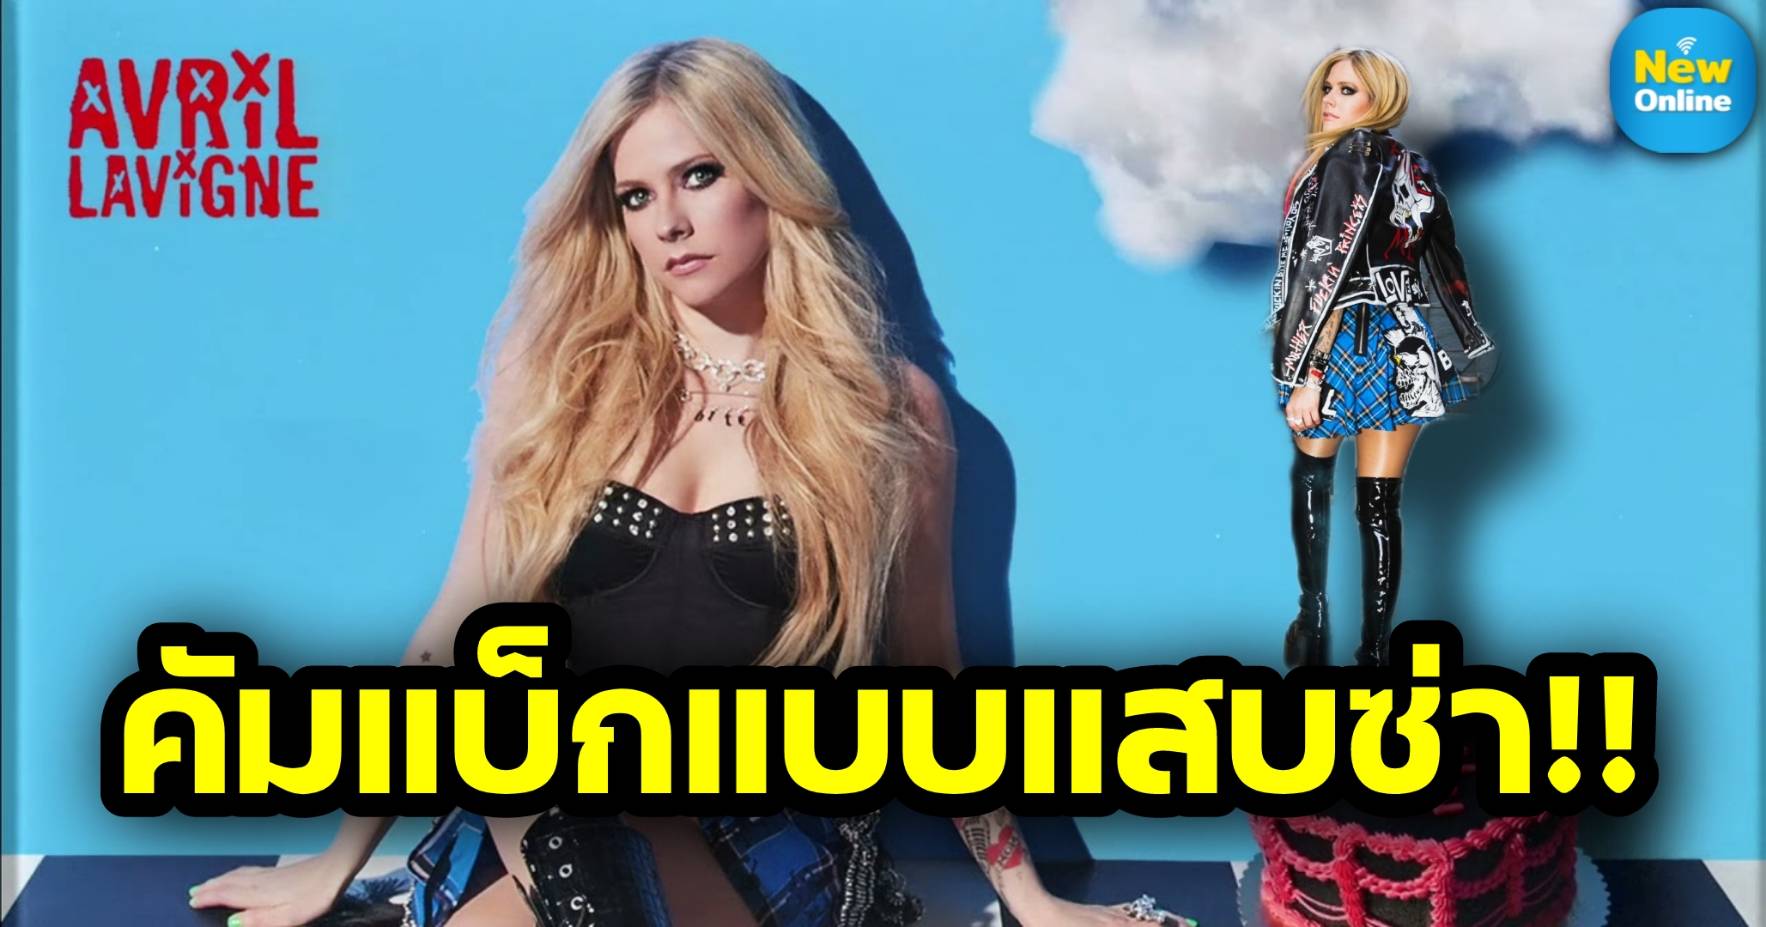 แม่มาแล้ว! “Bite Me” การกลับมาแบบสุดแซ่บของสาวเปรี้ยวตัวแม่ Avril Lavigne